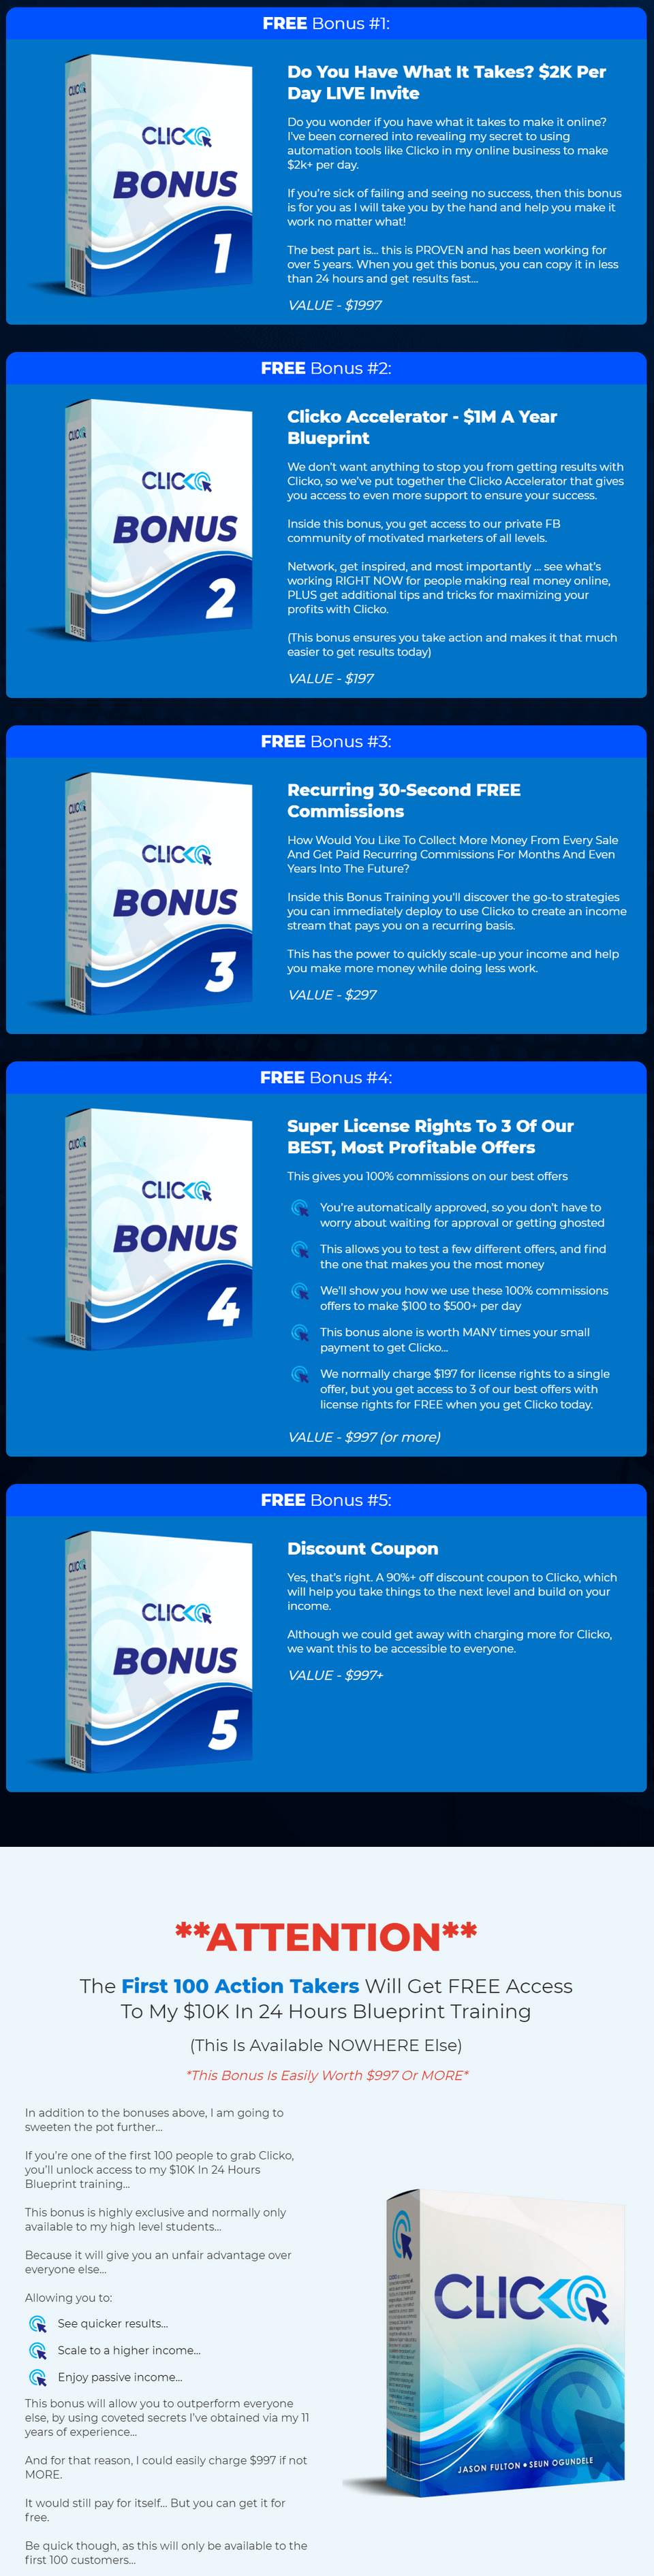 Clicko-bonus